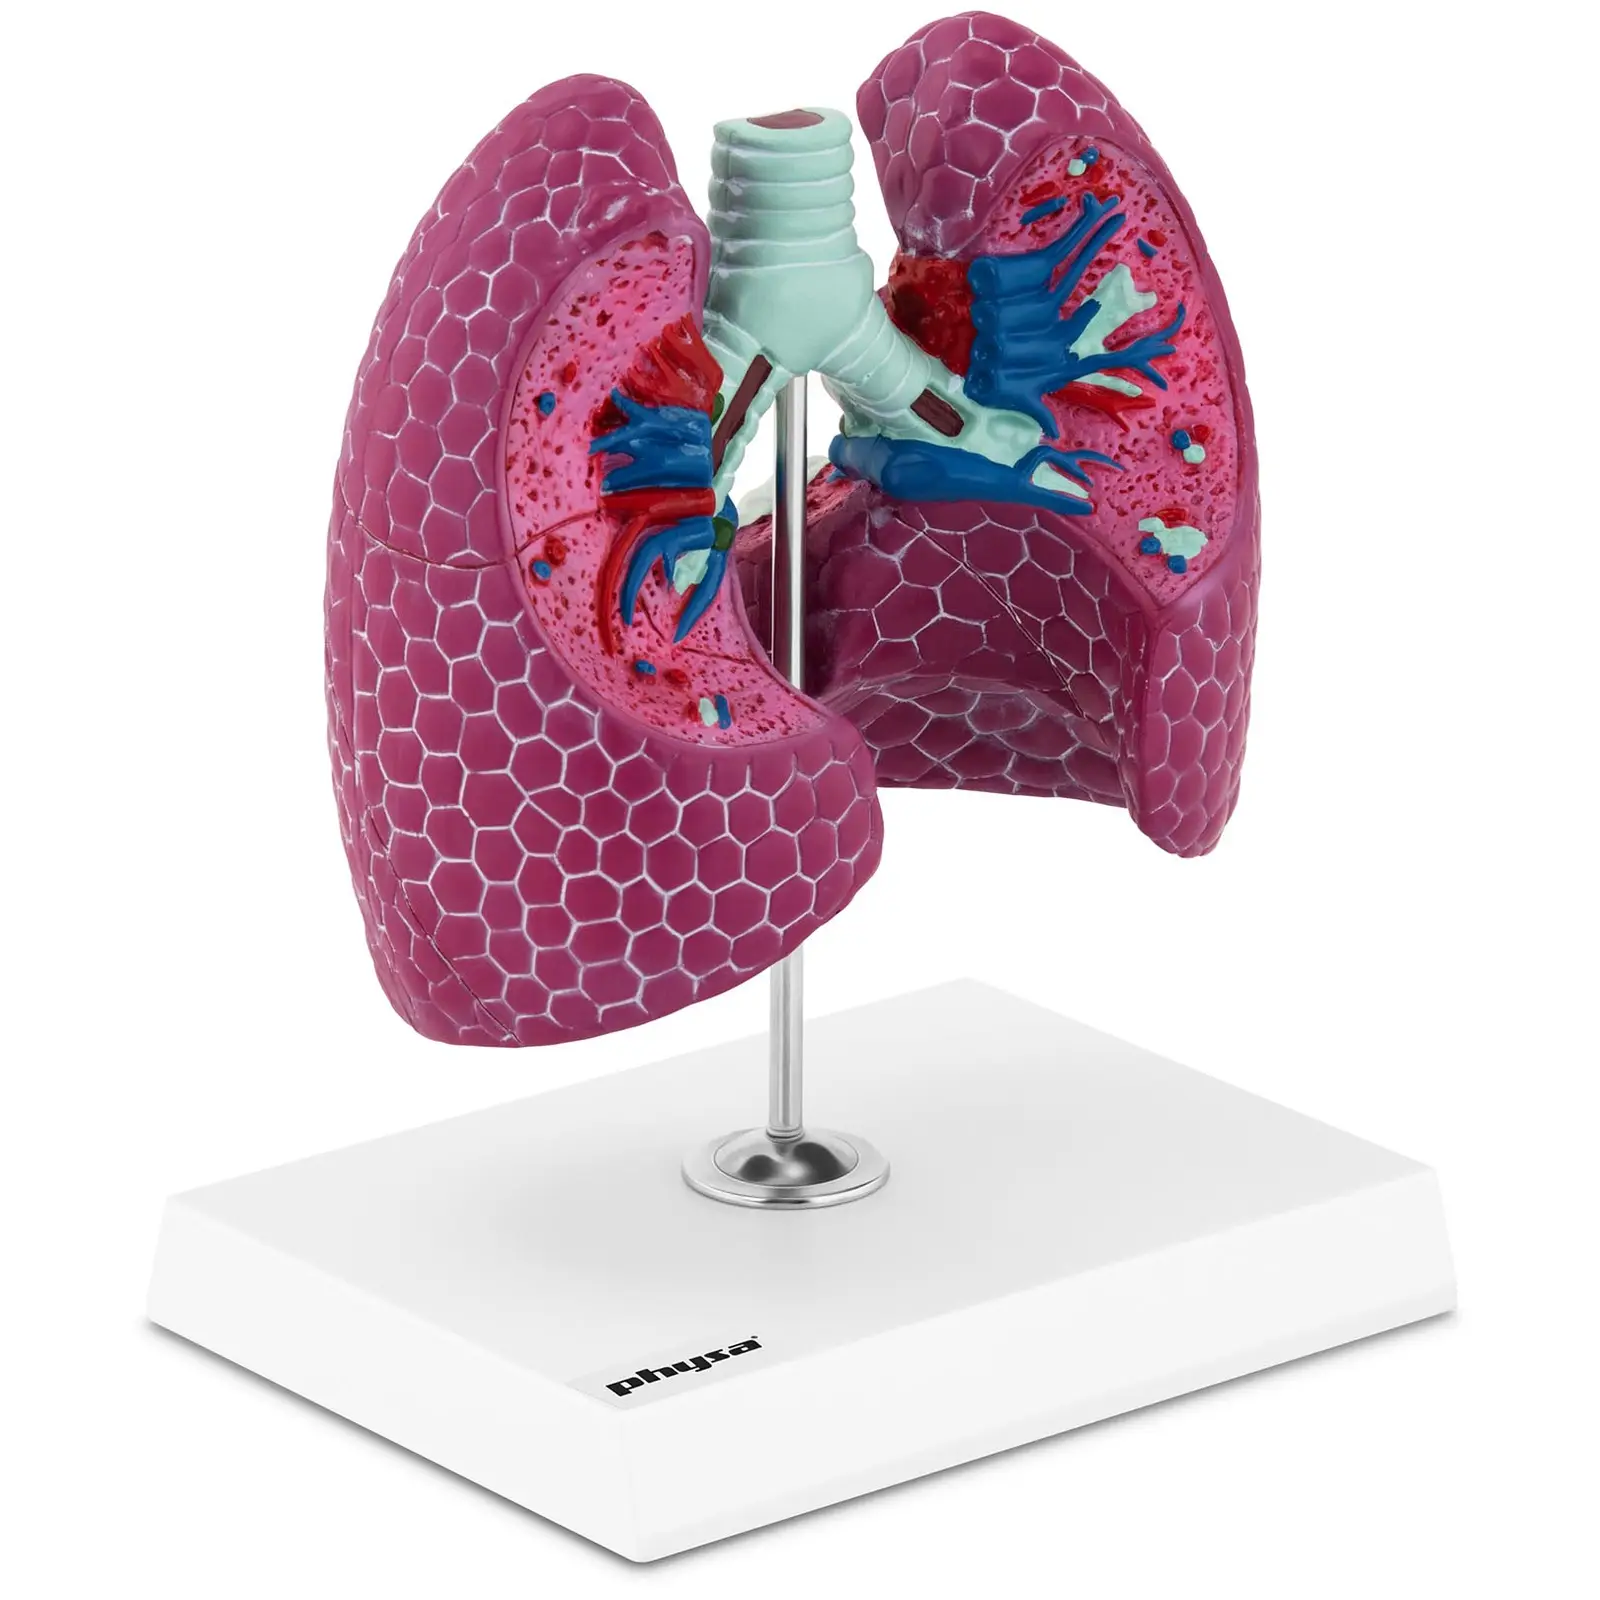 Maquette anatomique du système respiratoire - Avec poumon malade